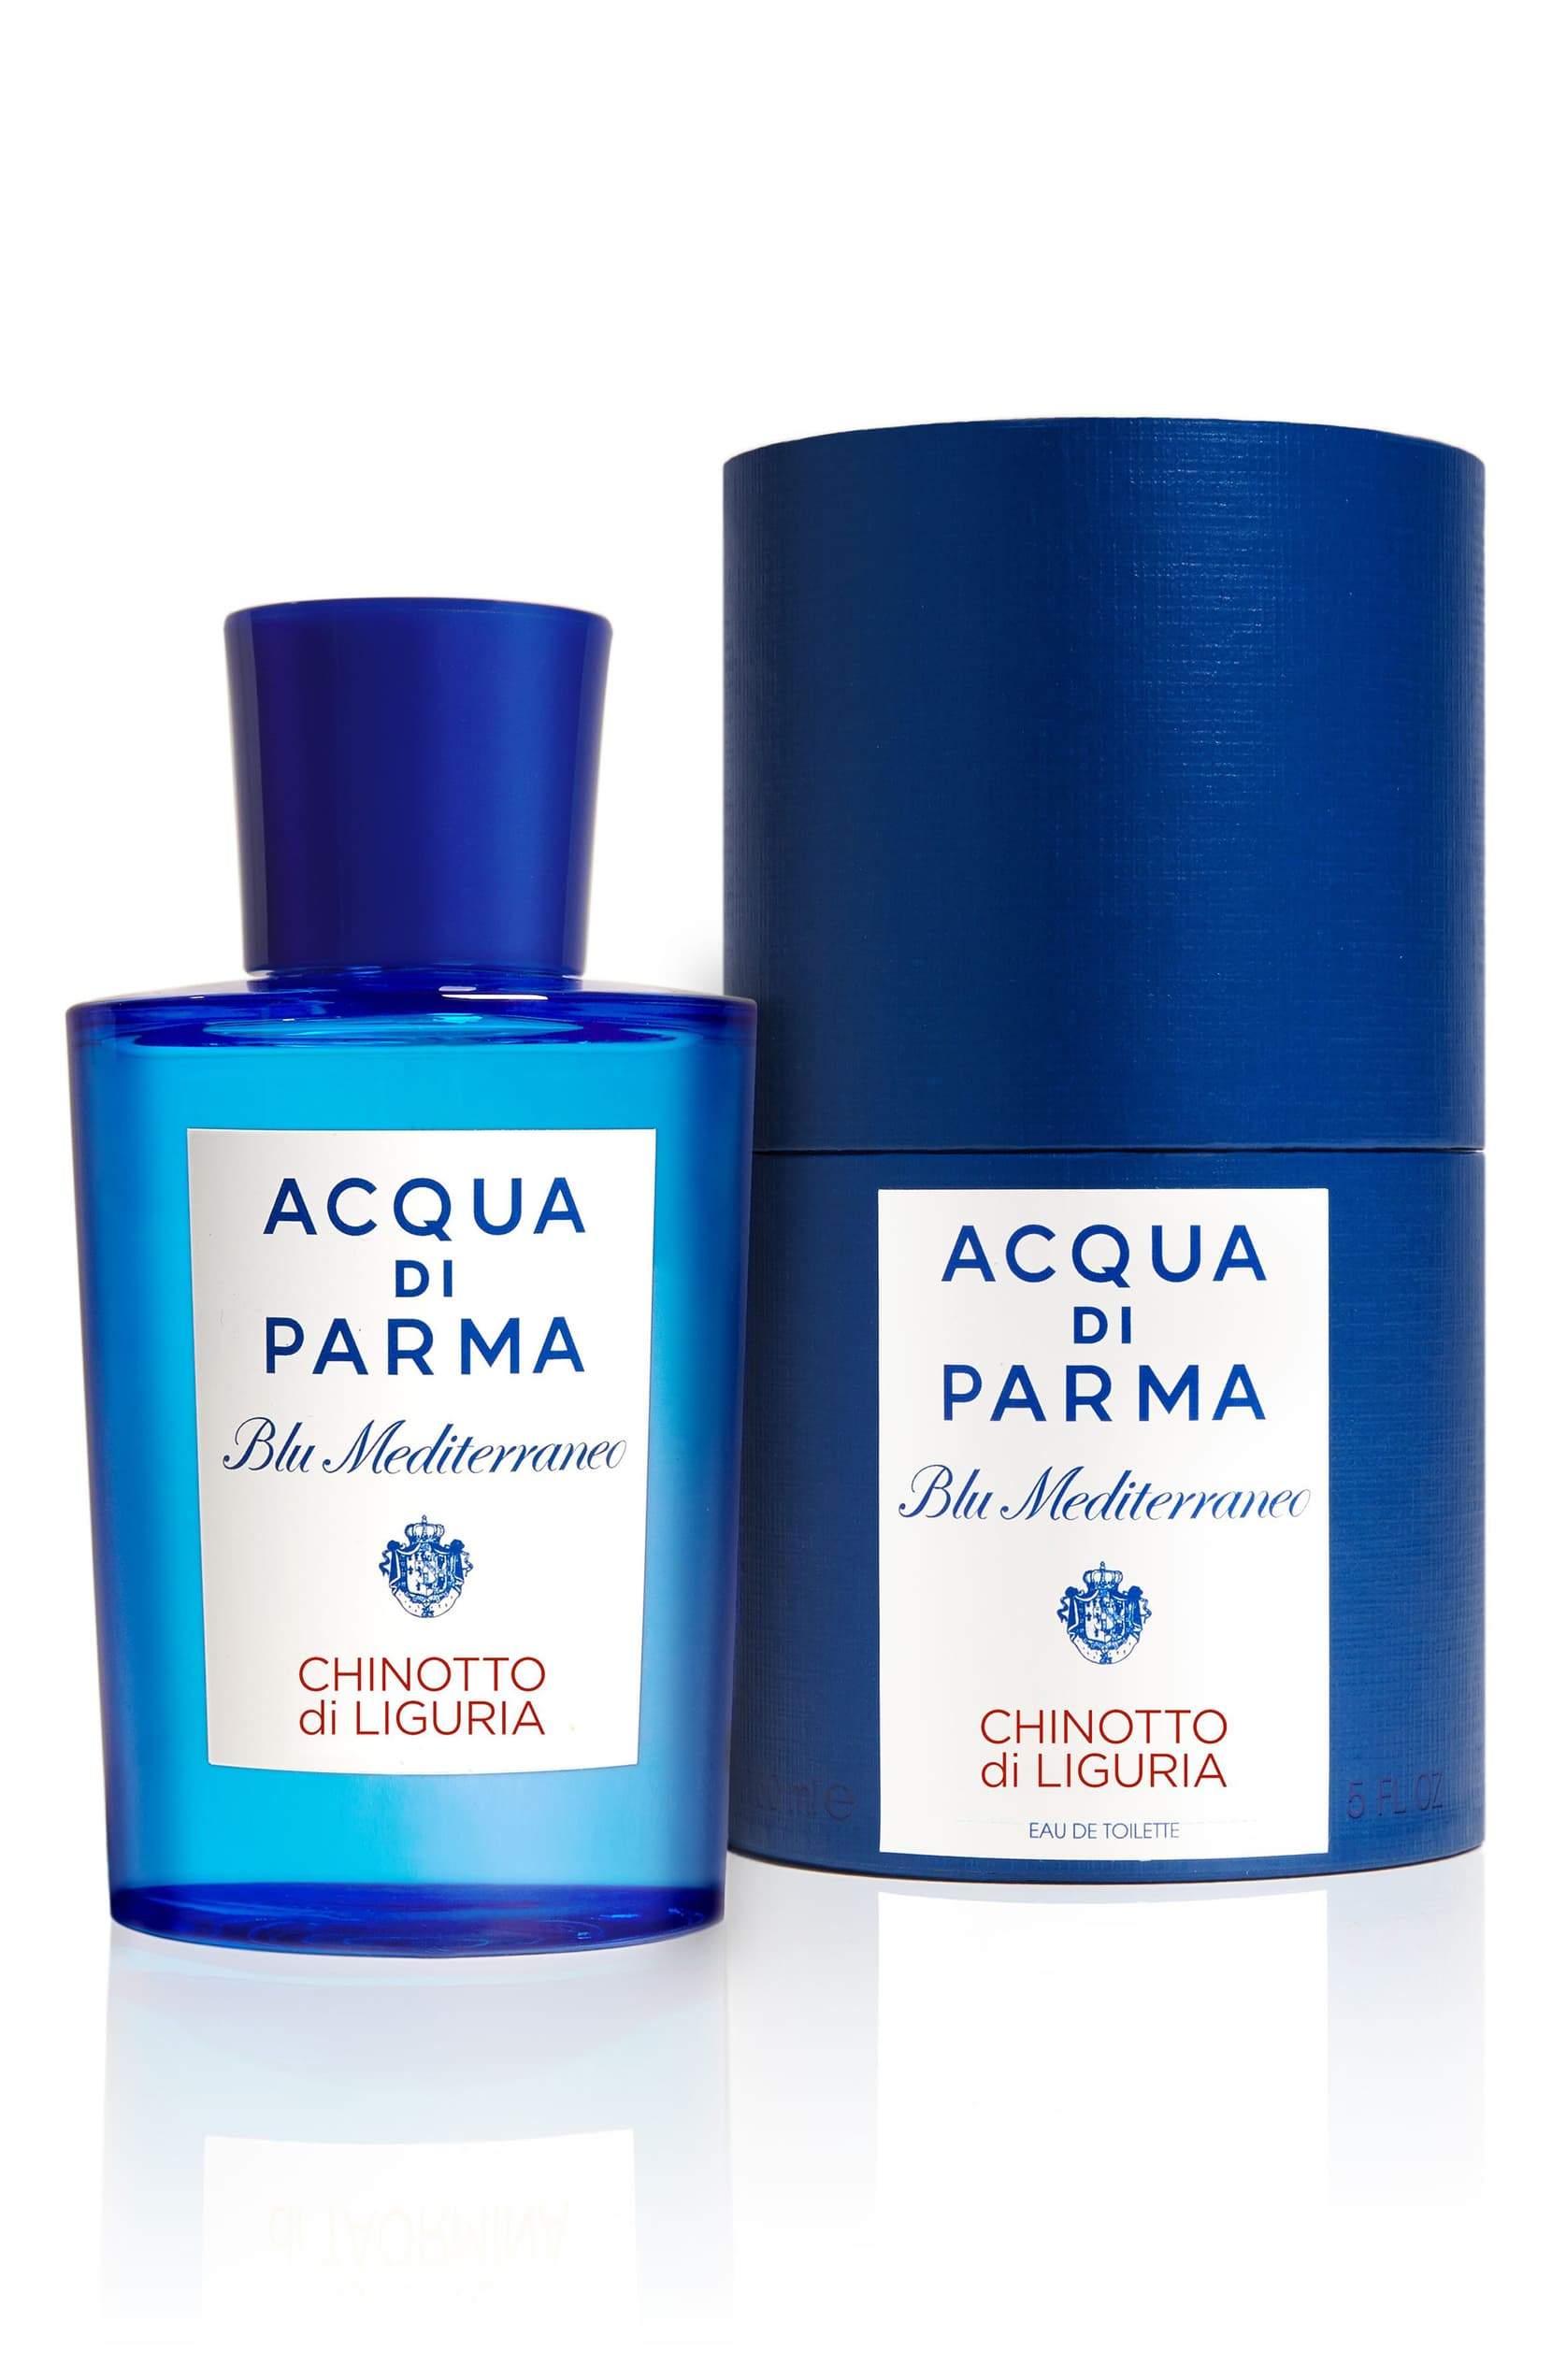  Acqua Di Parma Cologne Spray for Men, 3.4 Ounce : Acqua di Parma:  Beauty & Personal Care